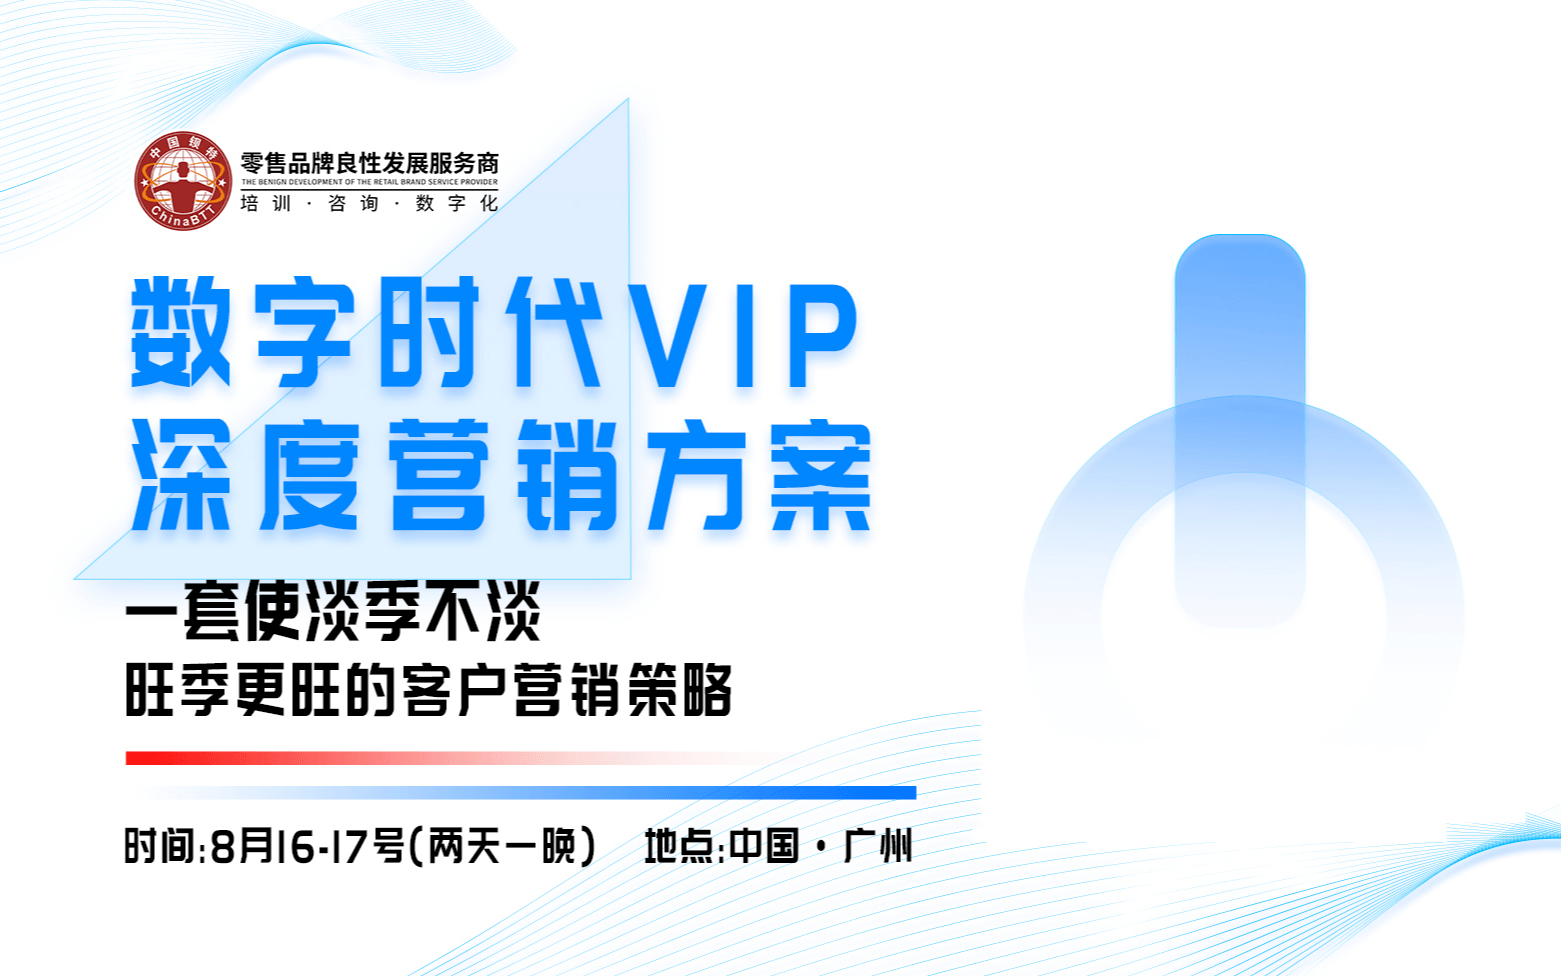 鋇特商學院《數字化時代VIP深度營銷方案》8月16-17廣州站